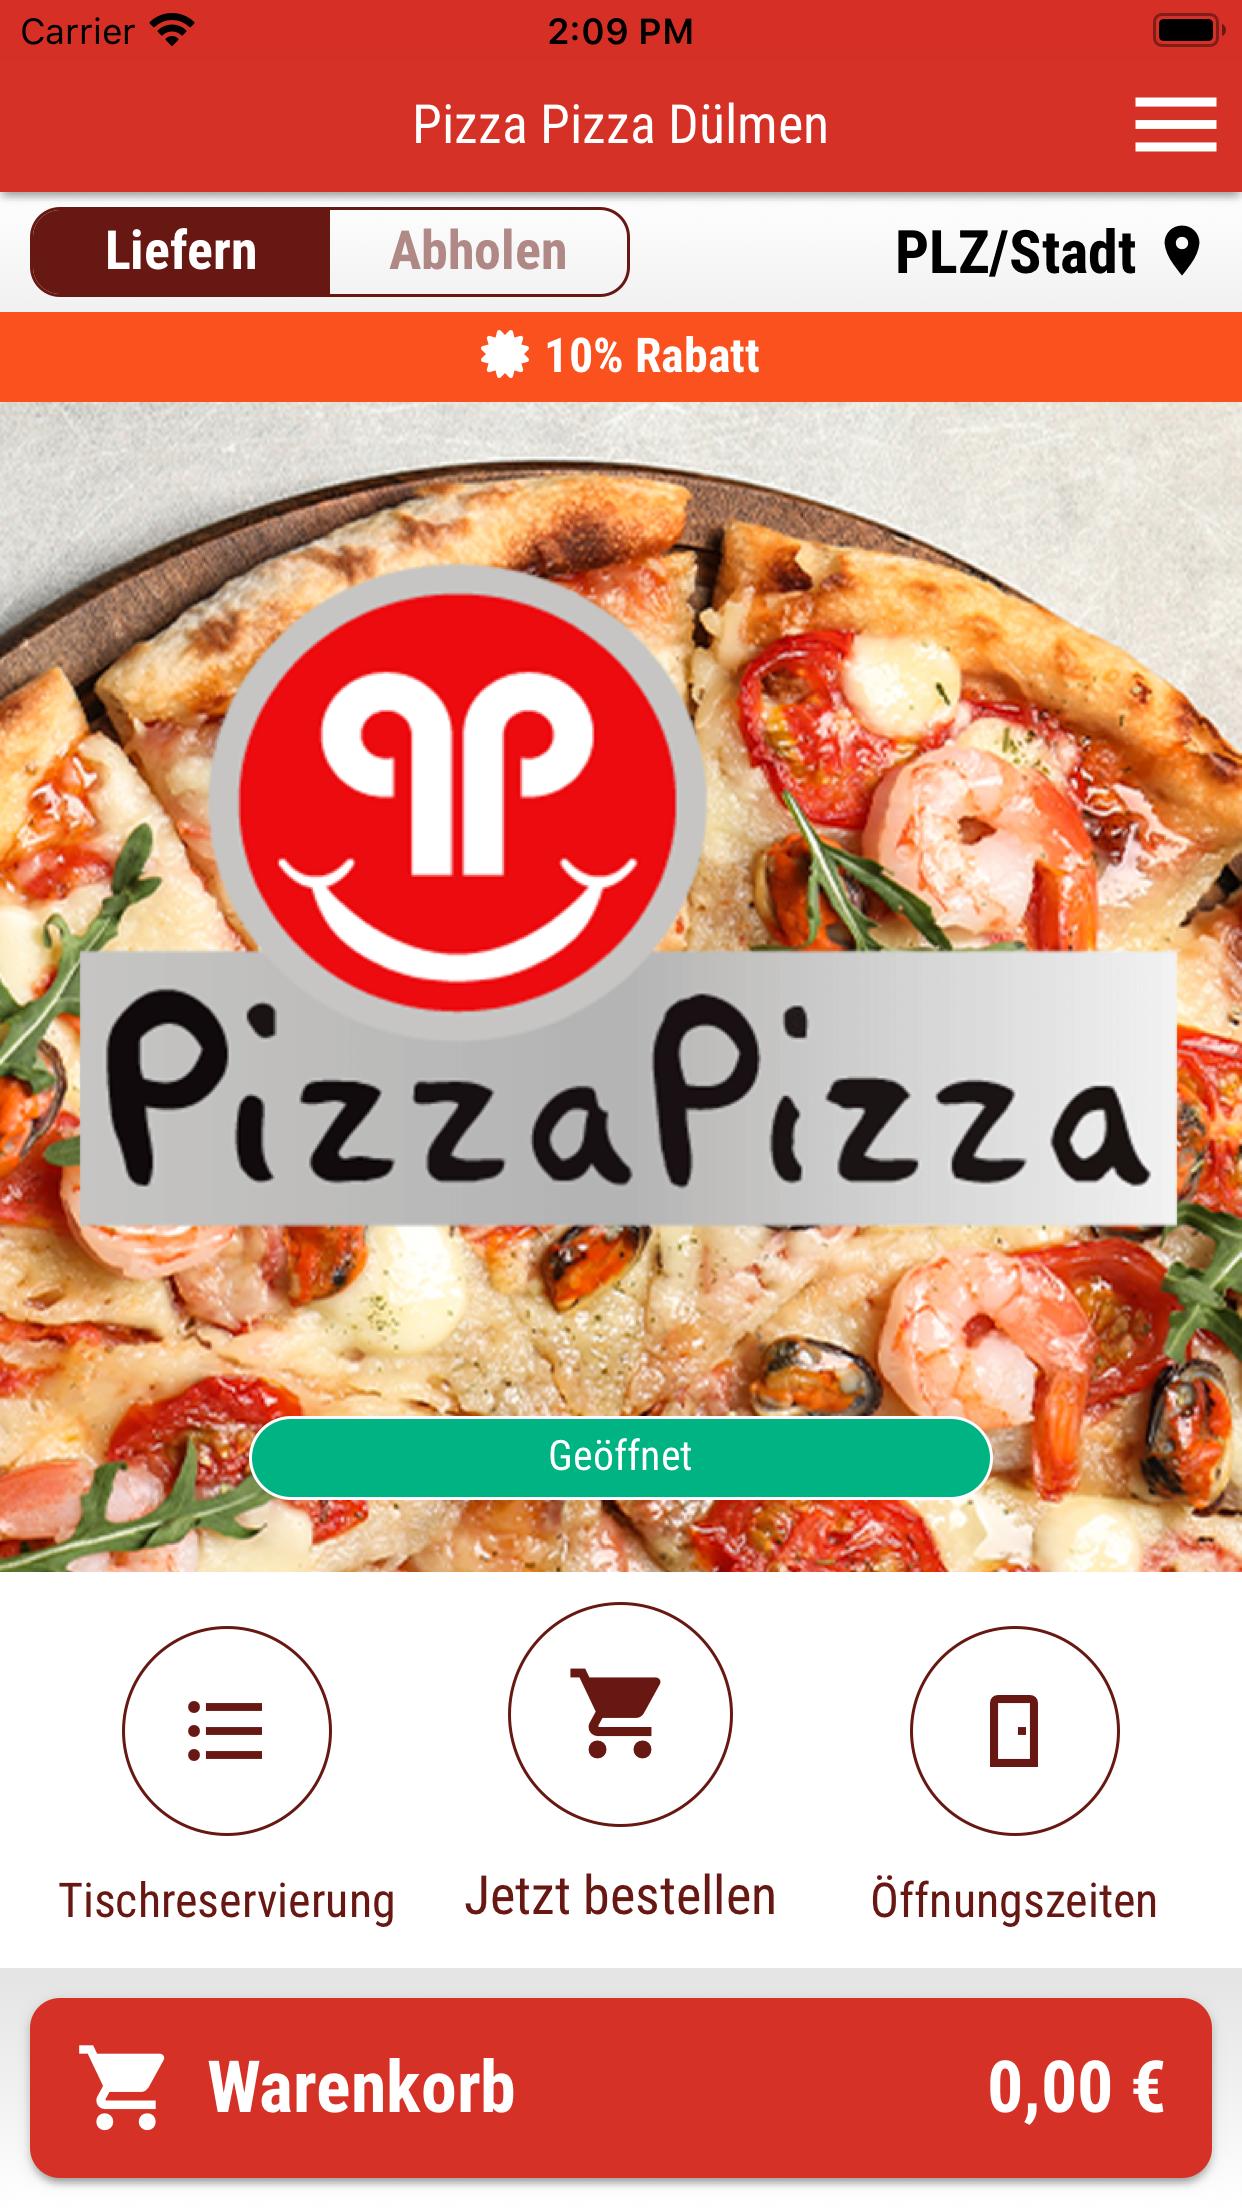 Pizza Pizza Dülmen for Android - APK Download